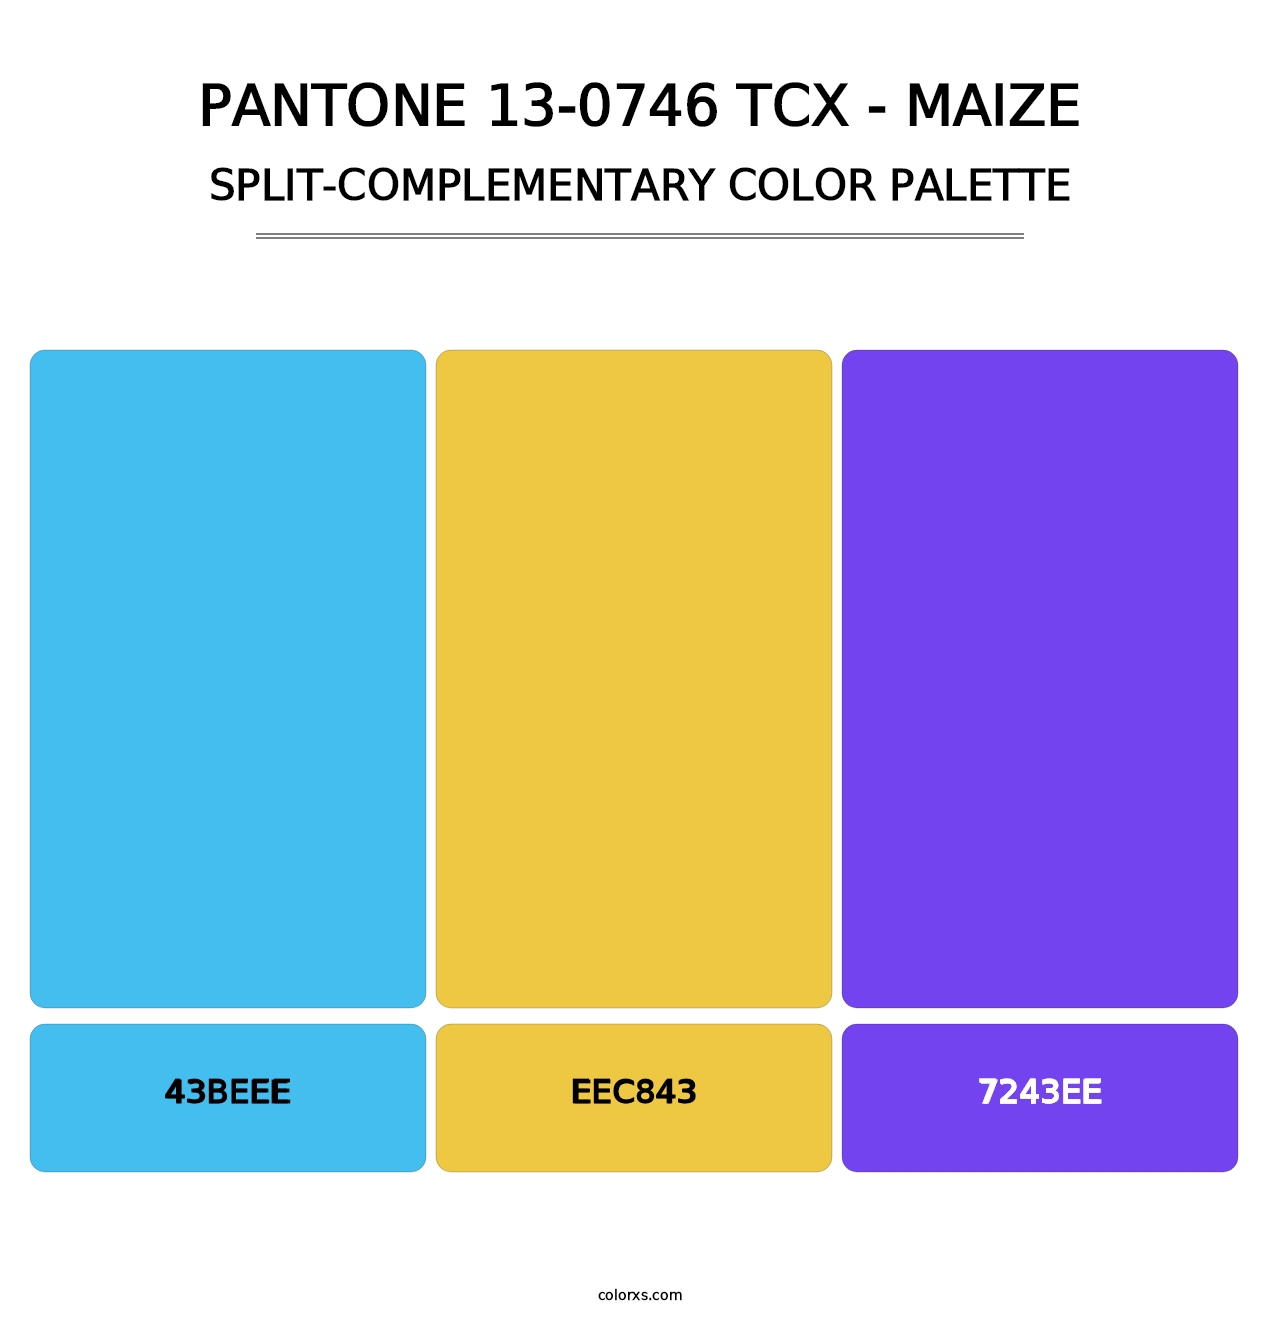 PANTONE 13-0746 TCX - Maize - Split-Complementary Color Palette